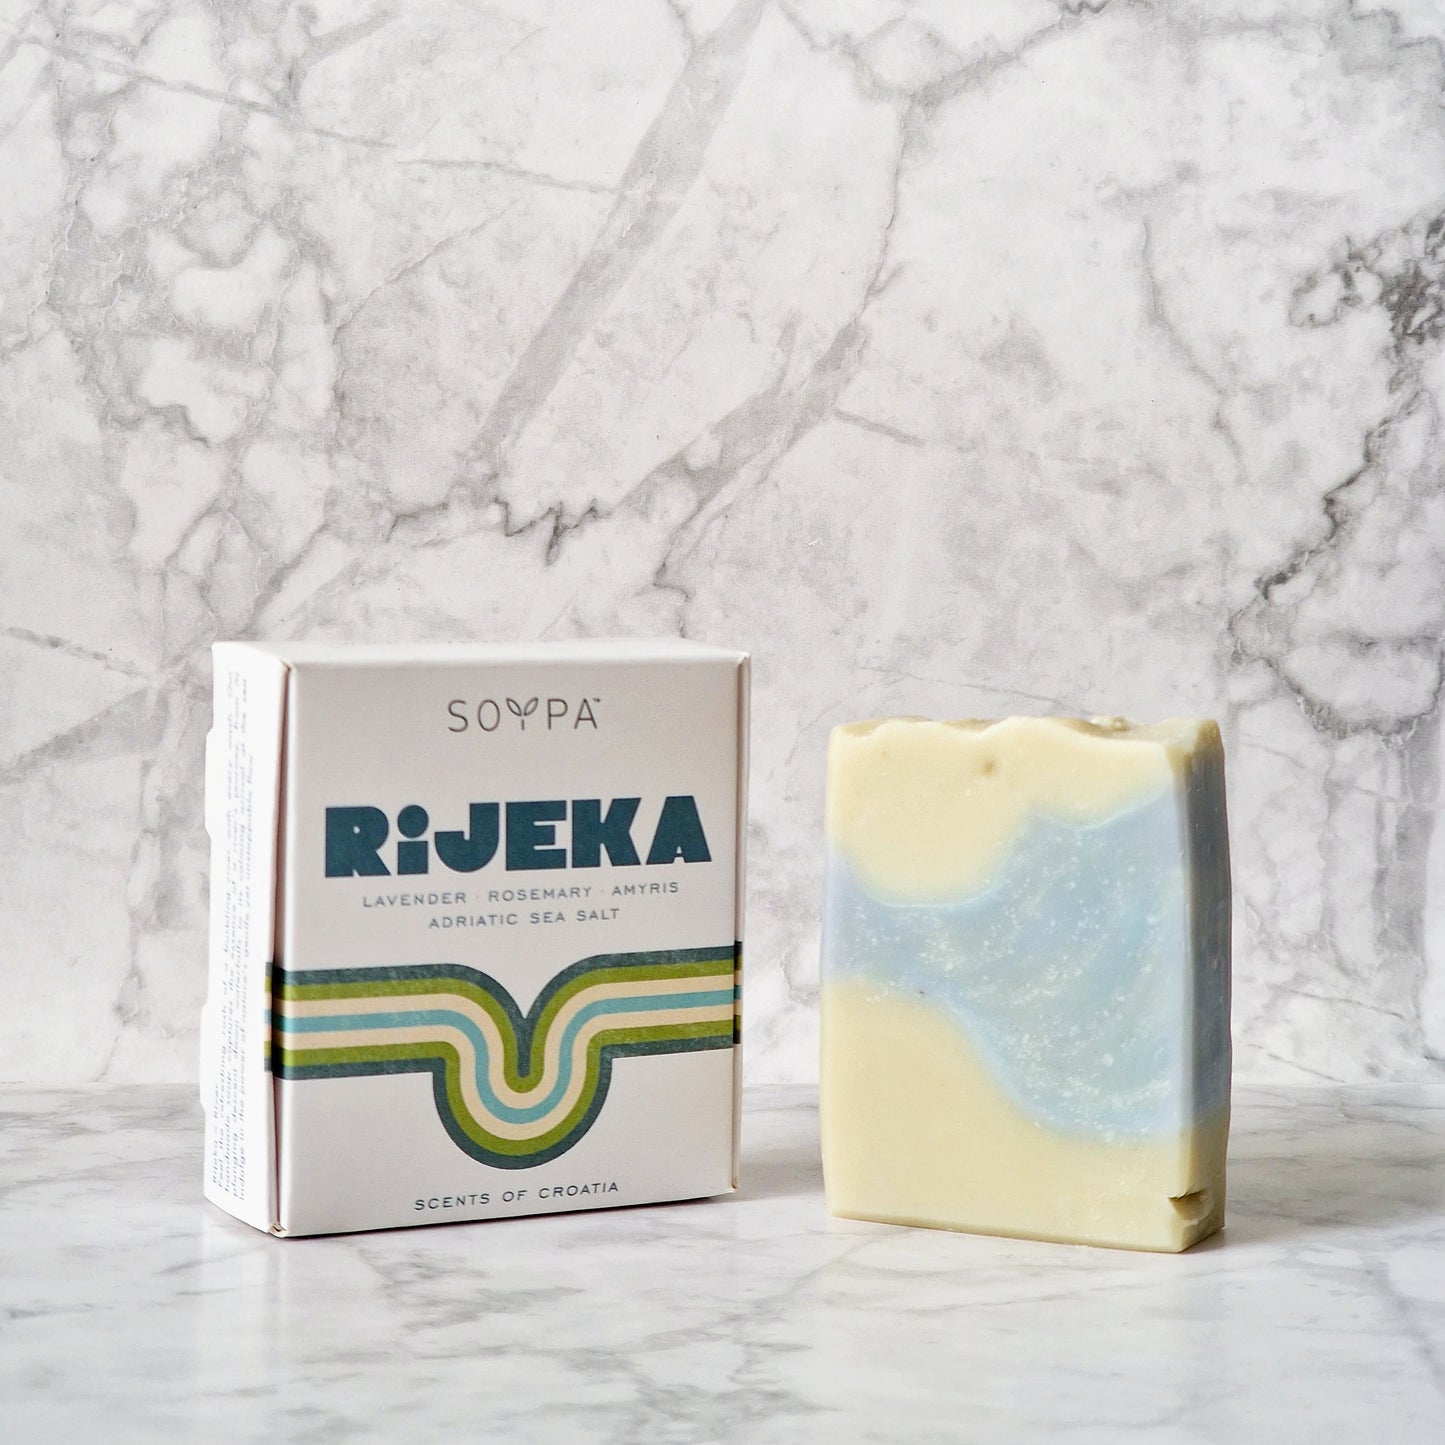 Rijeka handmade soap I Lavender, Rosemary, Amyris